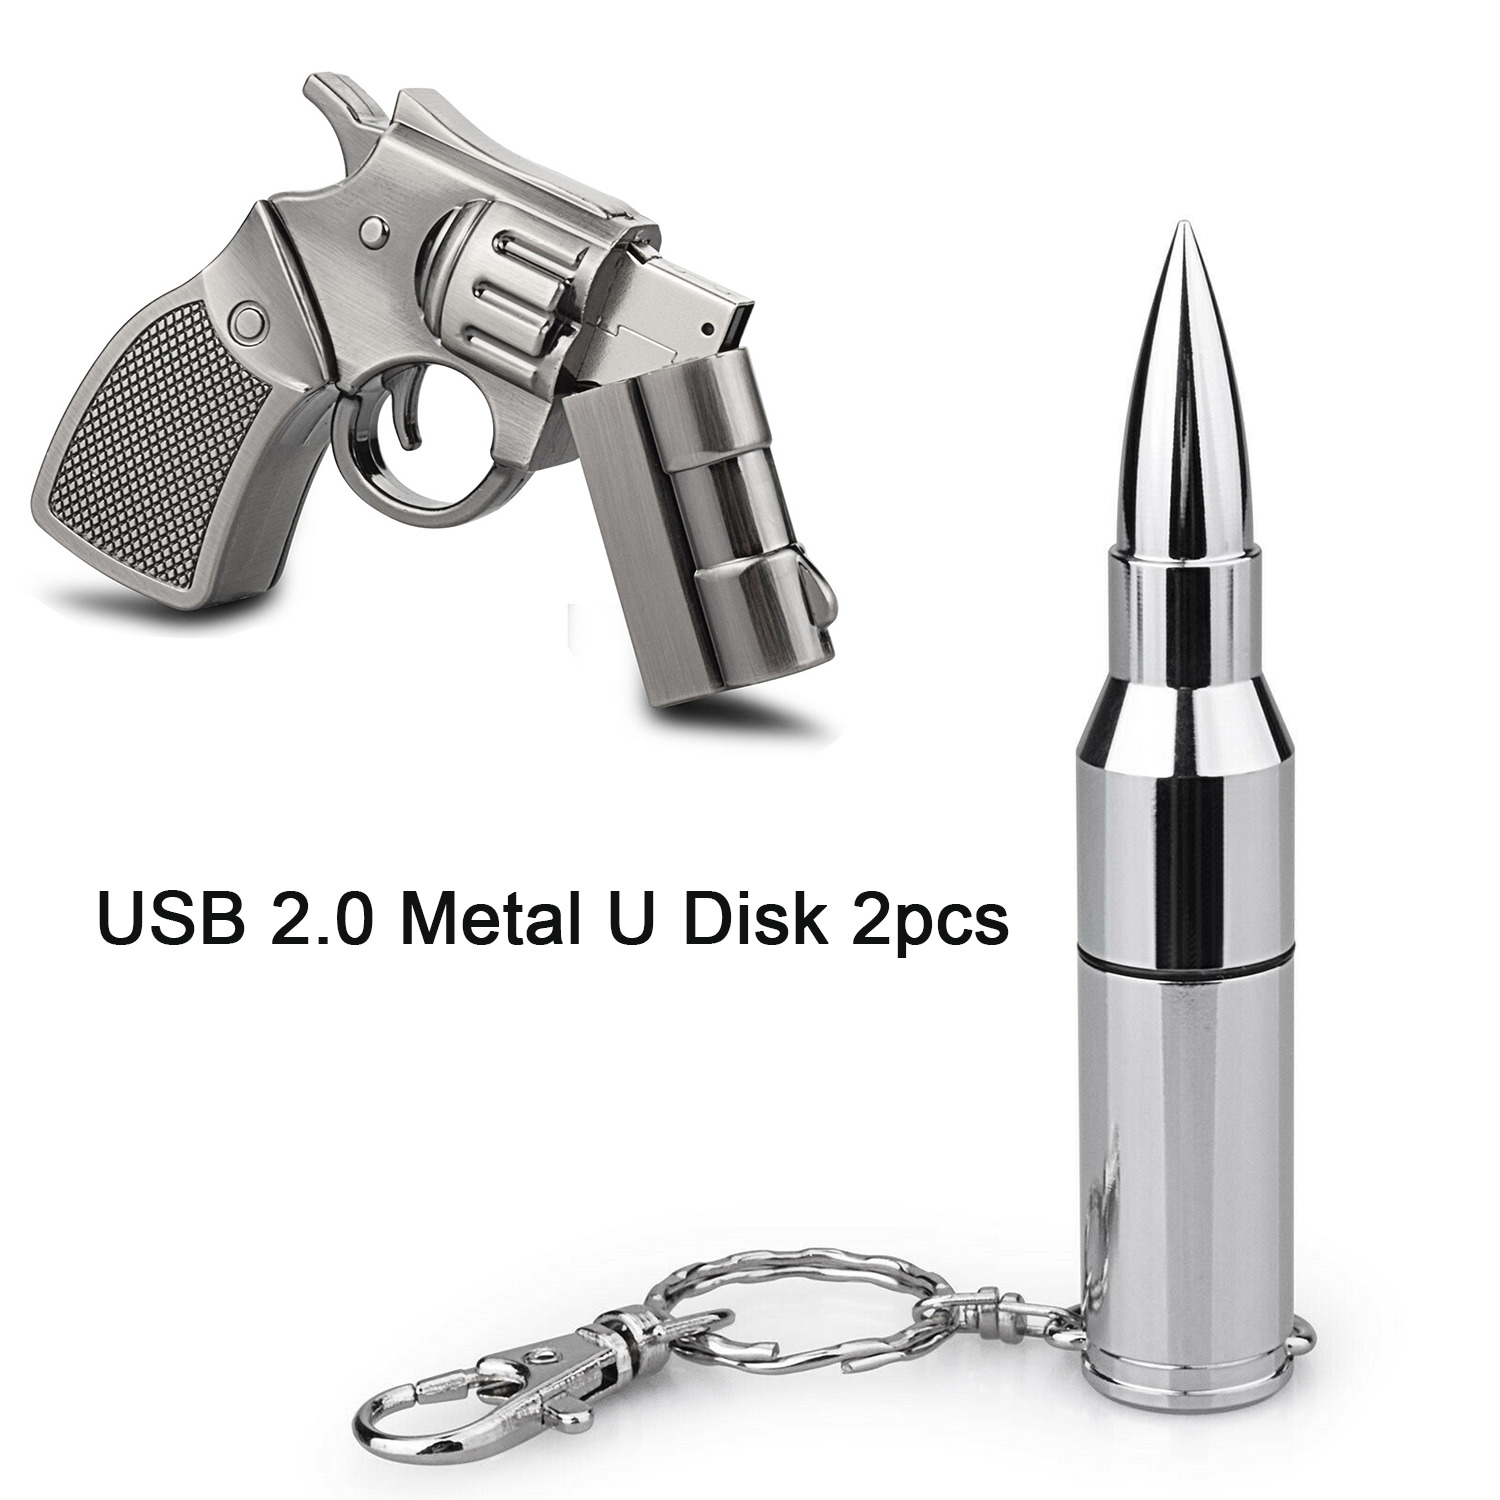 Bullet Model USB Flash Drive+Gun Model Flash Drive 32GB USB 2.0 2pcs Pack Silver